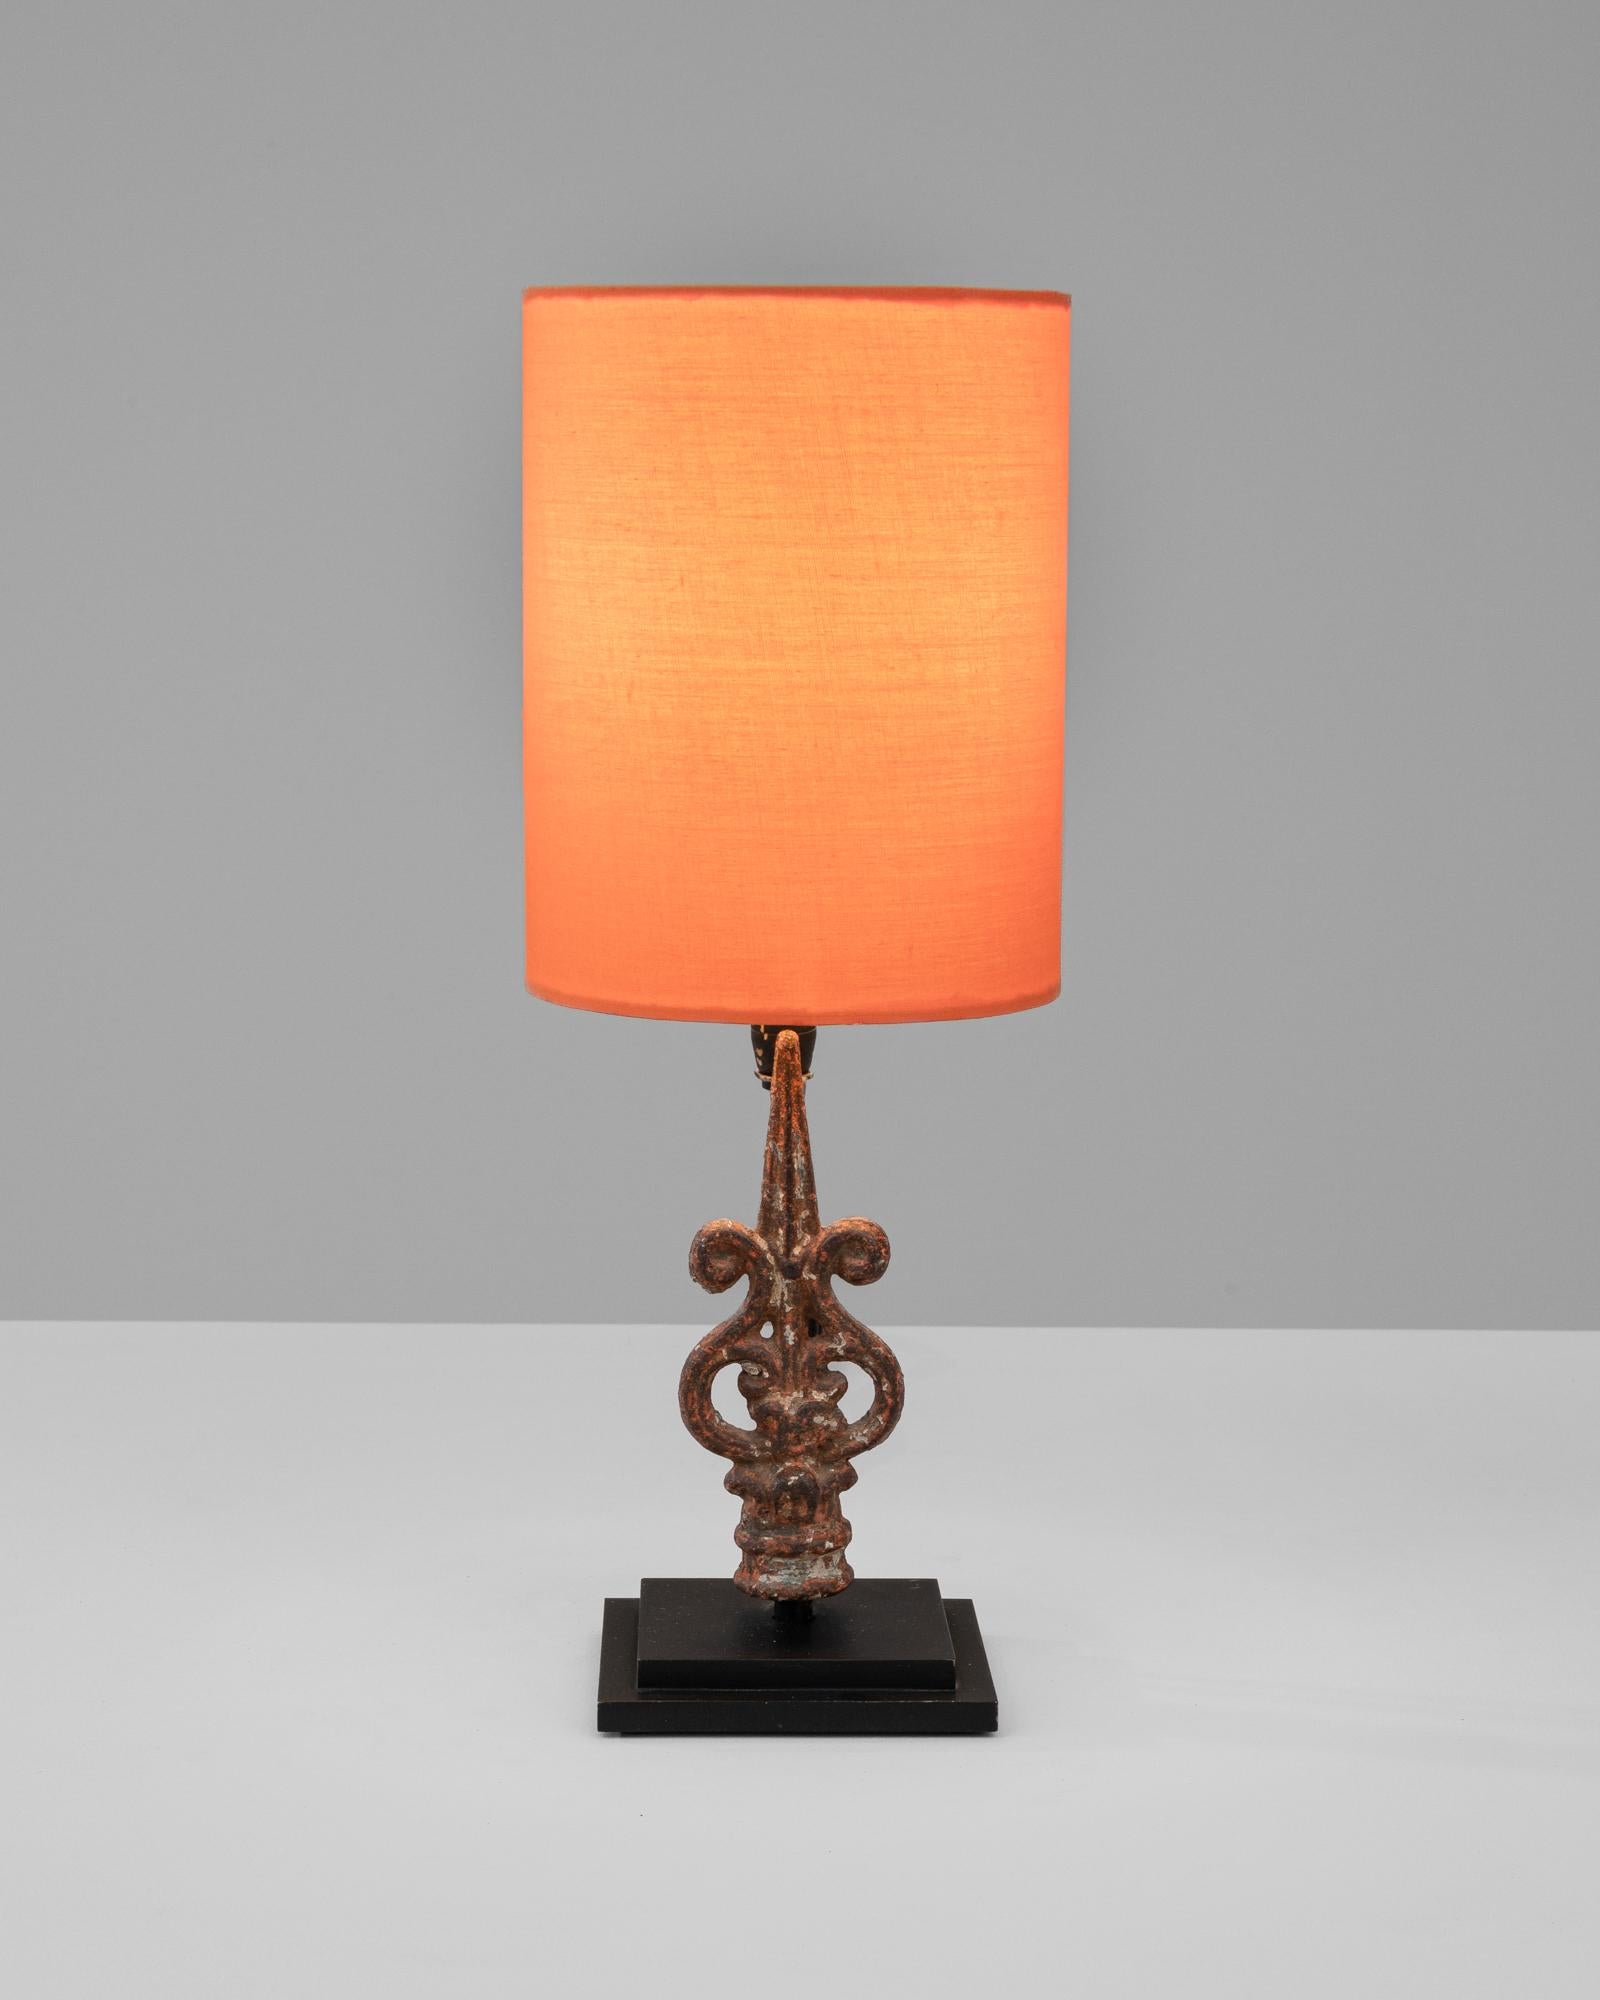 Capturez l'essence du design français avec cette lampe à poser française en bois des années 1900, une pièce exquise qui allie avec art charme rustique et sophistication classique. La base de la lampe est une œuvre d'art sculpturale, mettant en